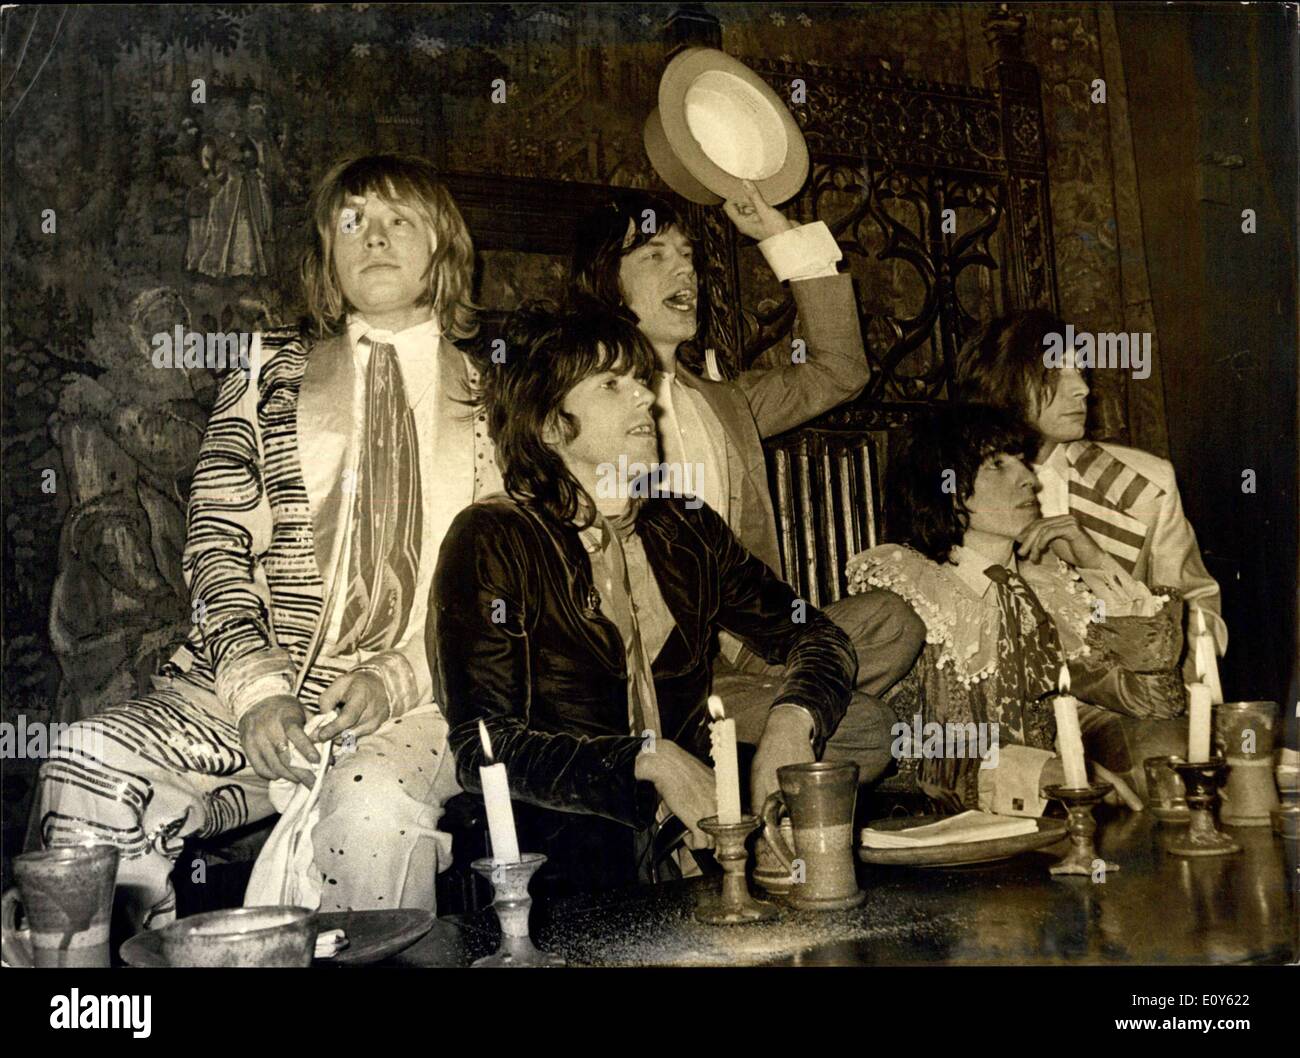 Diciembre 05, 1968 - Tarta de flan de arrojar en Beggars Banquet dadas por Rolling Stones: Los Rolling Stones celebró hoy una Beggars Banquet, con sirviendo wenches, etc, para que un gran número de amigos, periodista de televisión de El Al folk, fueron invitados, en la sala isabelina, Gore Hotel Queensgate. El banquete fue redondeada con una tarta custrad batalla.La imagen muestra: Los Rolling Stones, adecuadamente vestido para el banquete-. Son (de izquierda a derecha): Brian Jones; Keith Richard: Mick Jagger, Bill Wyman y Charlie Watss. Foto de stock